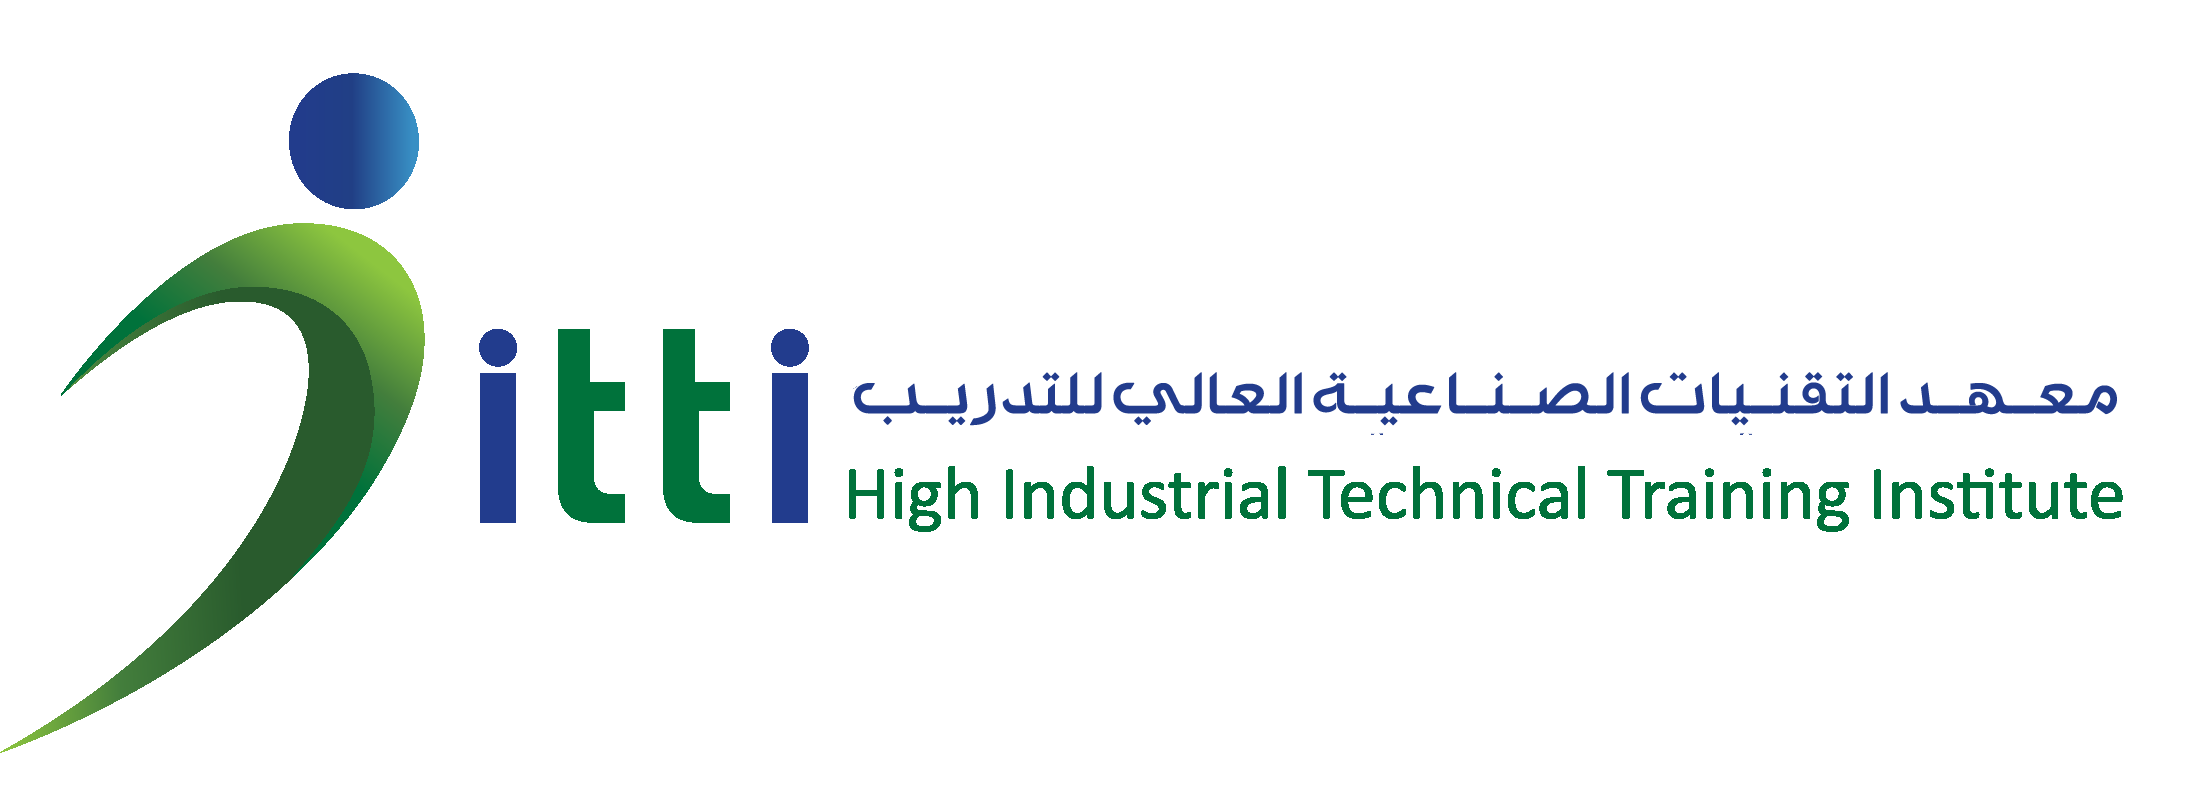 Industrial Technical Training Institute 